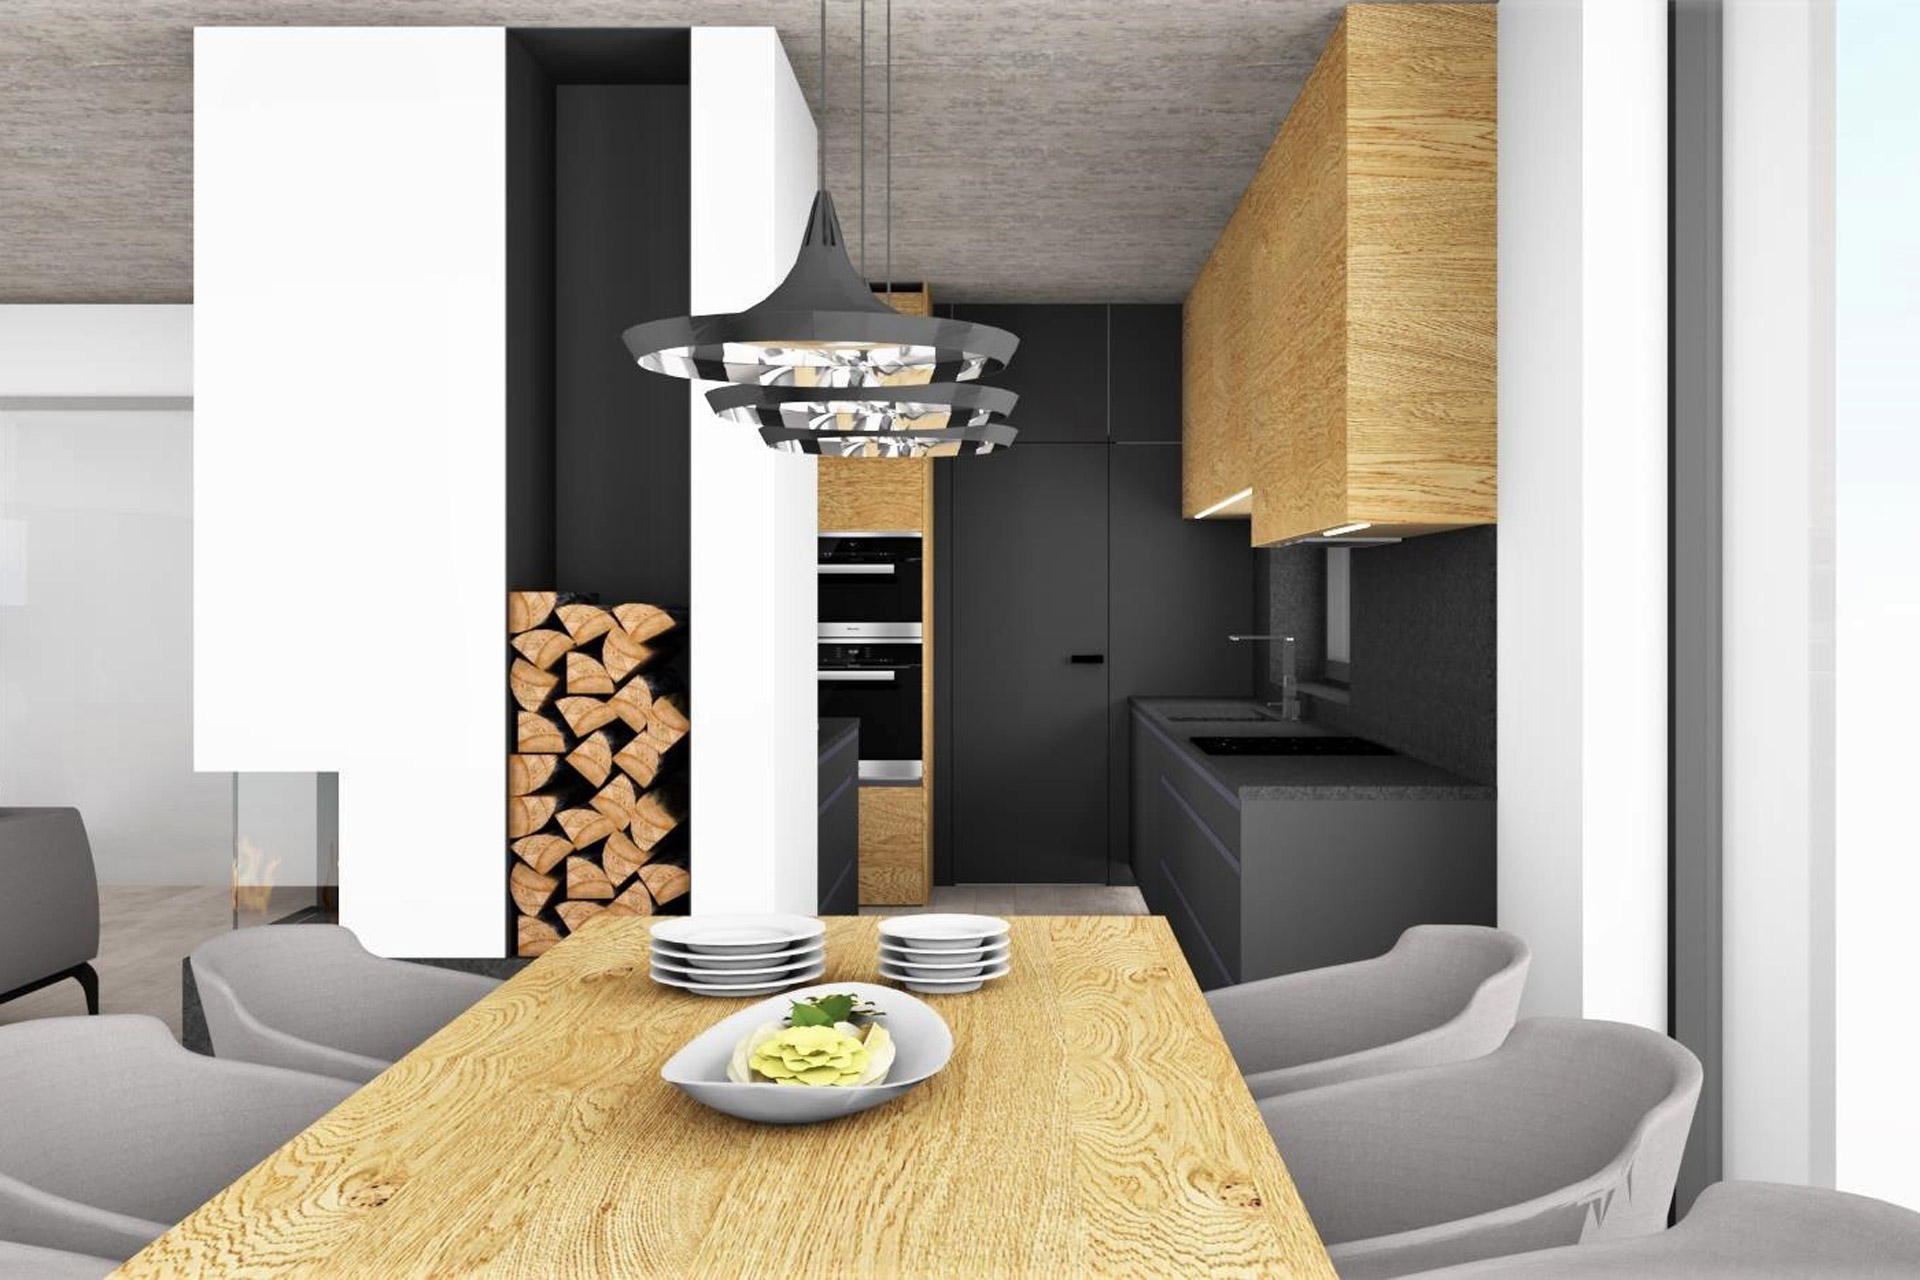 Hanak furniture House interior design Kitchen